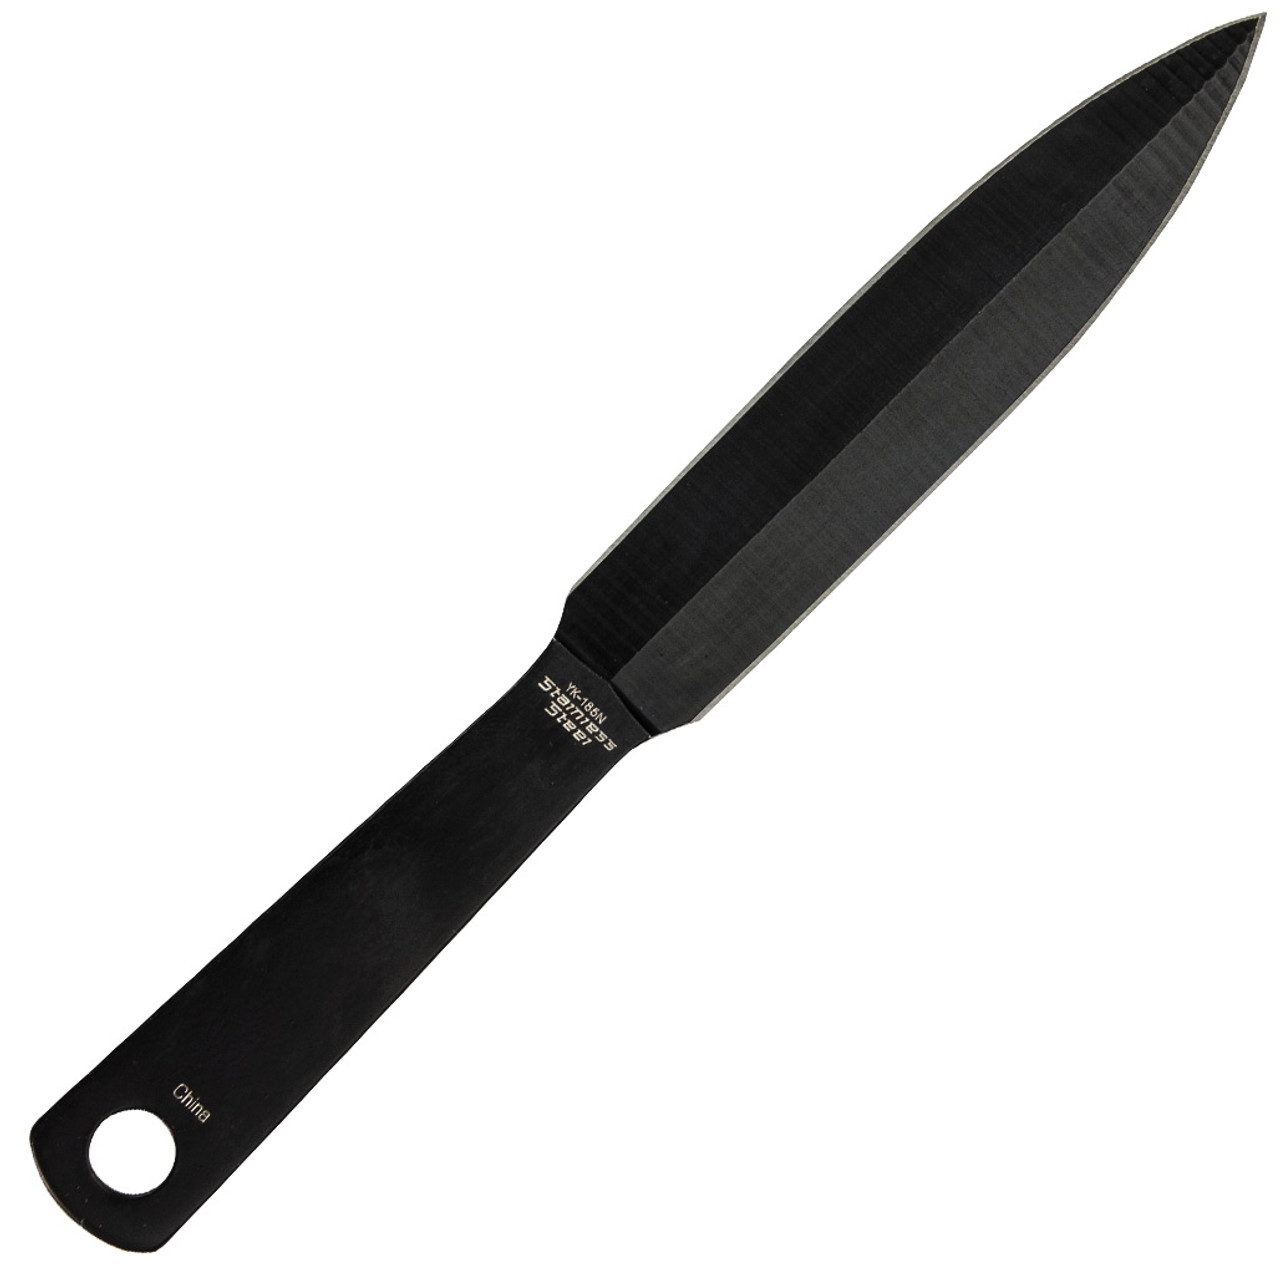 Black Throwing Knife Set - Back